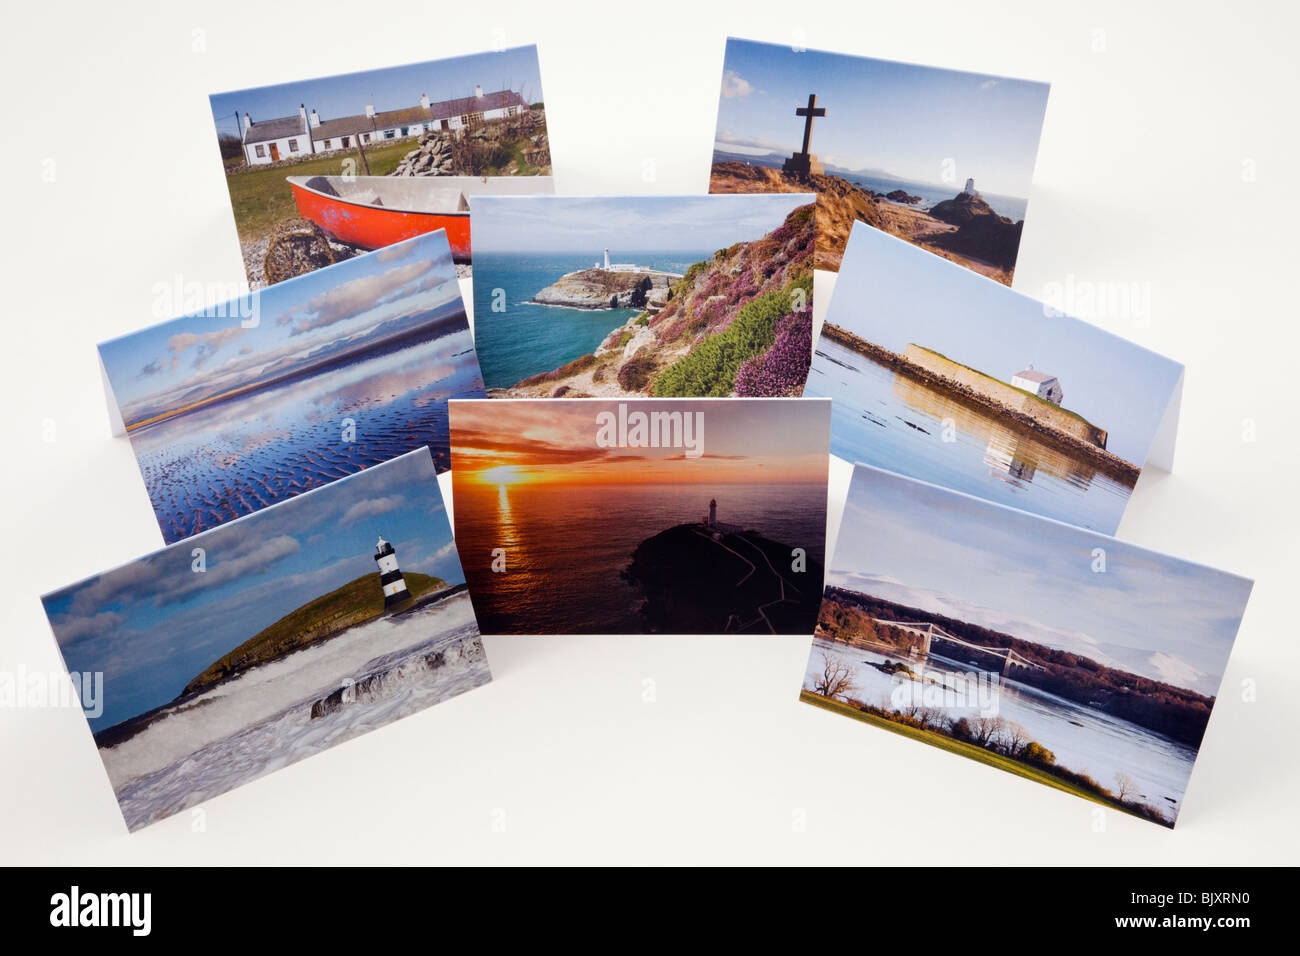 Regno Unito, Gran Bretagna. Selezione del messaggio di saluto fotografico schede raffiguranti paesaggi di Anglesey su sfondo bianco Foto Stock